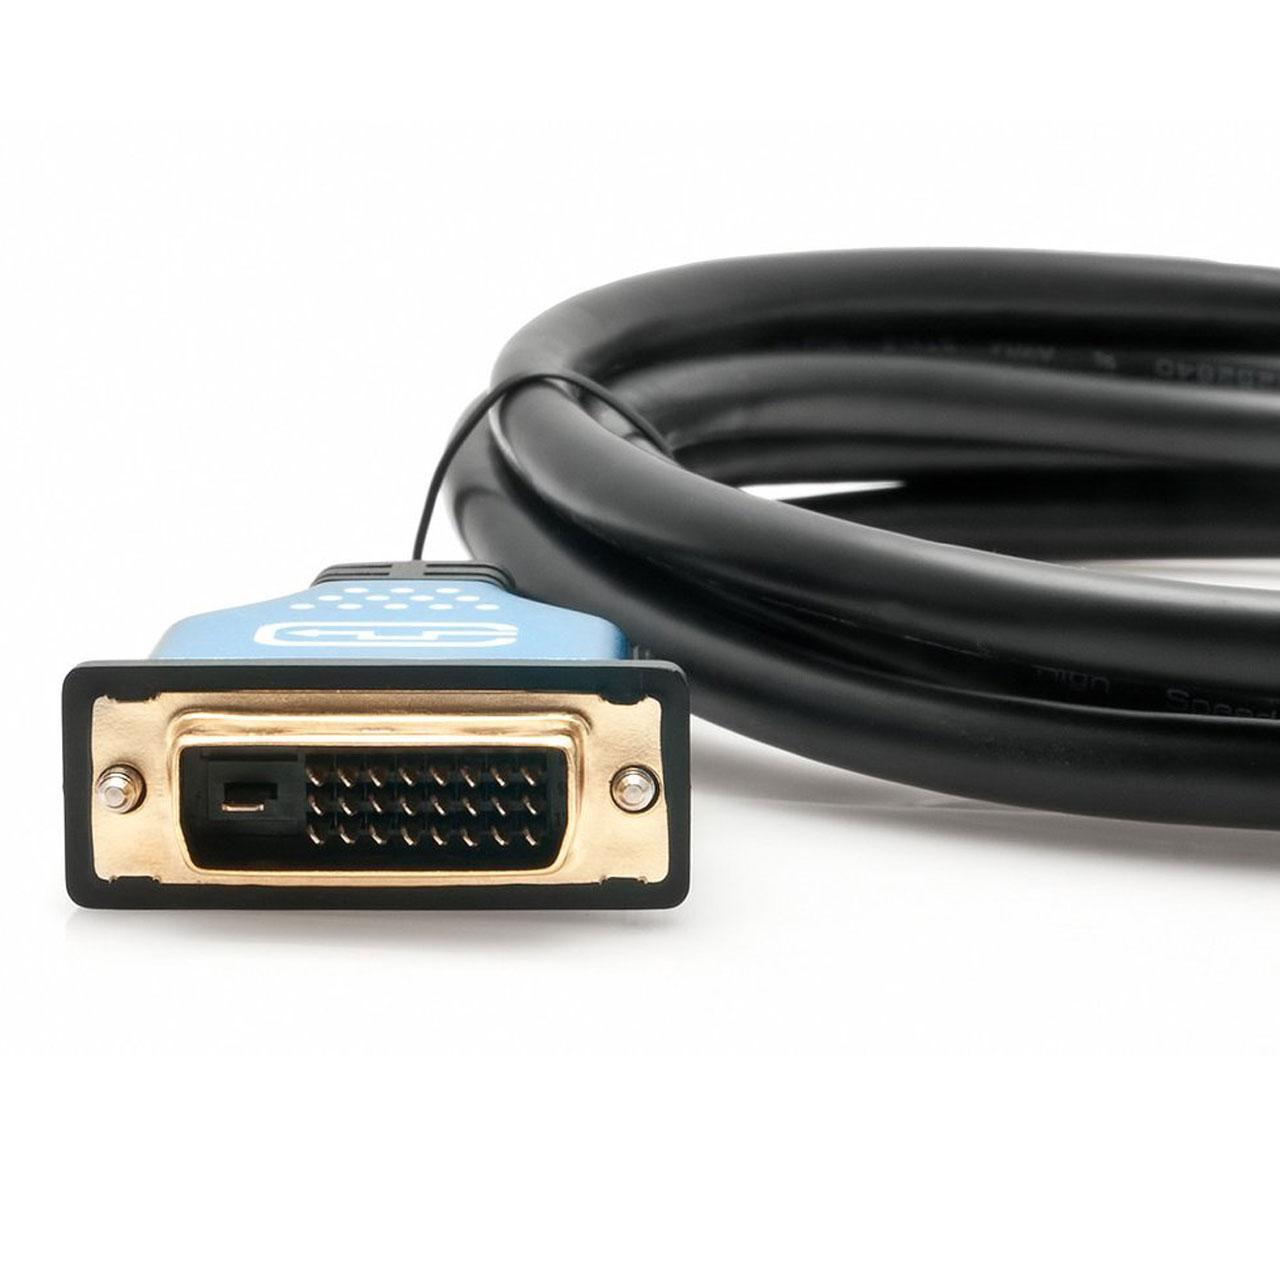 کابل تبدیل DVI به HDMI برند ZICO